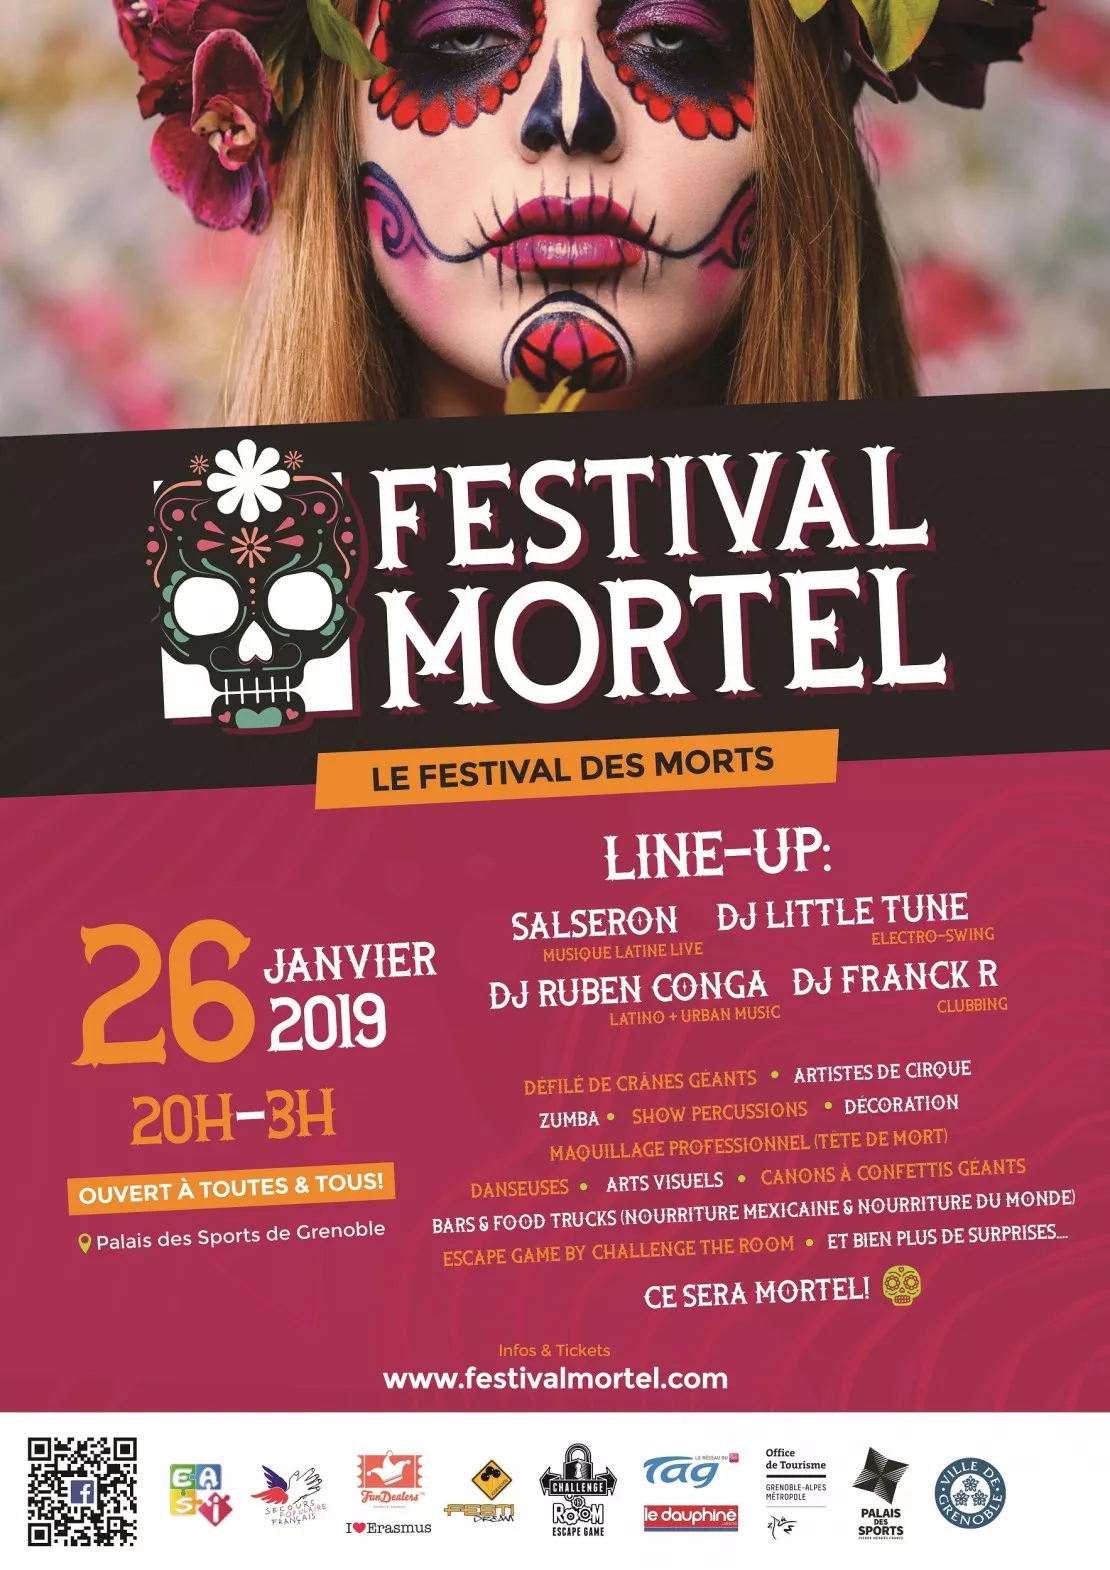 Festival Mortel Samedi 26 janvier au palais des sports de Grenoble